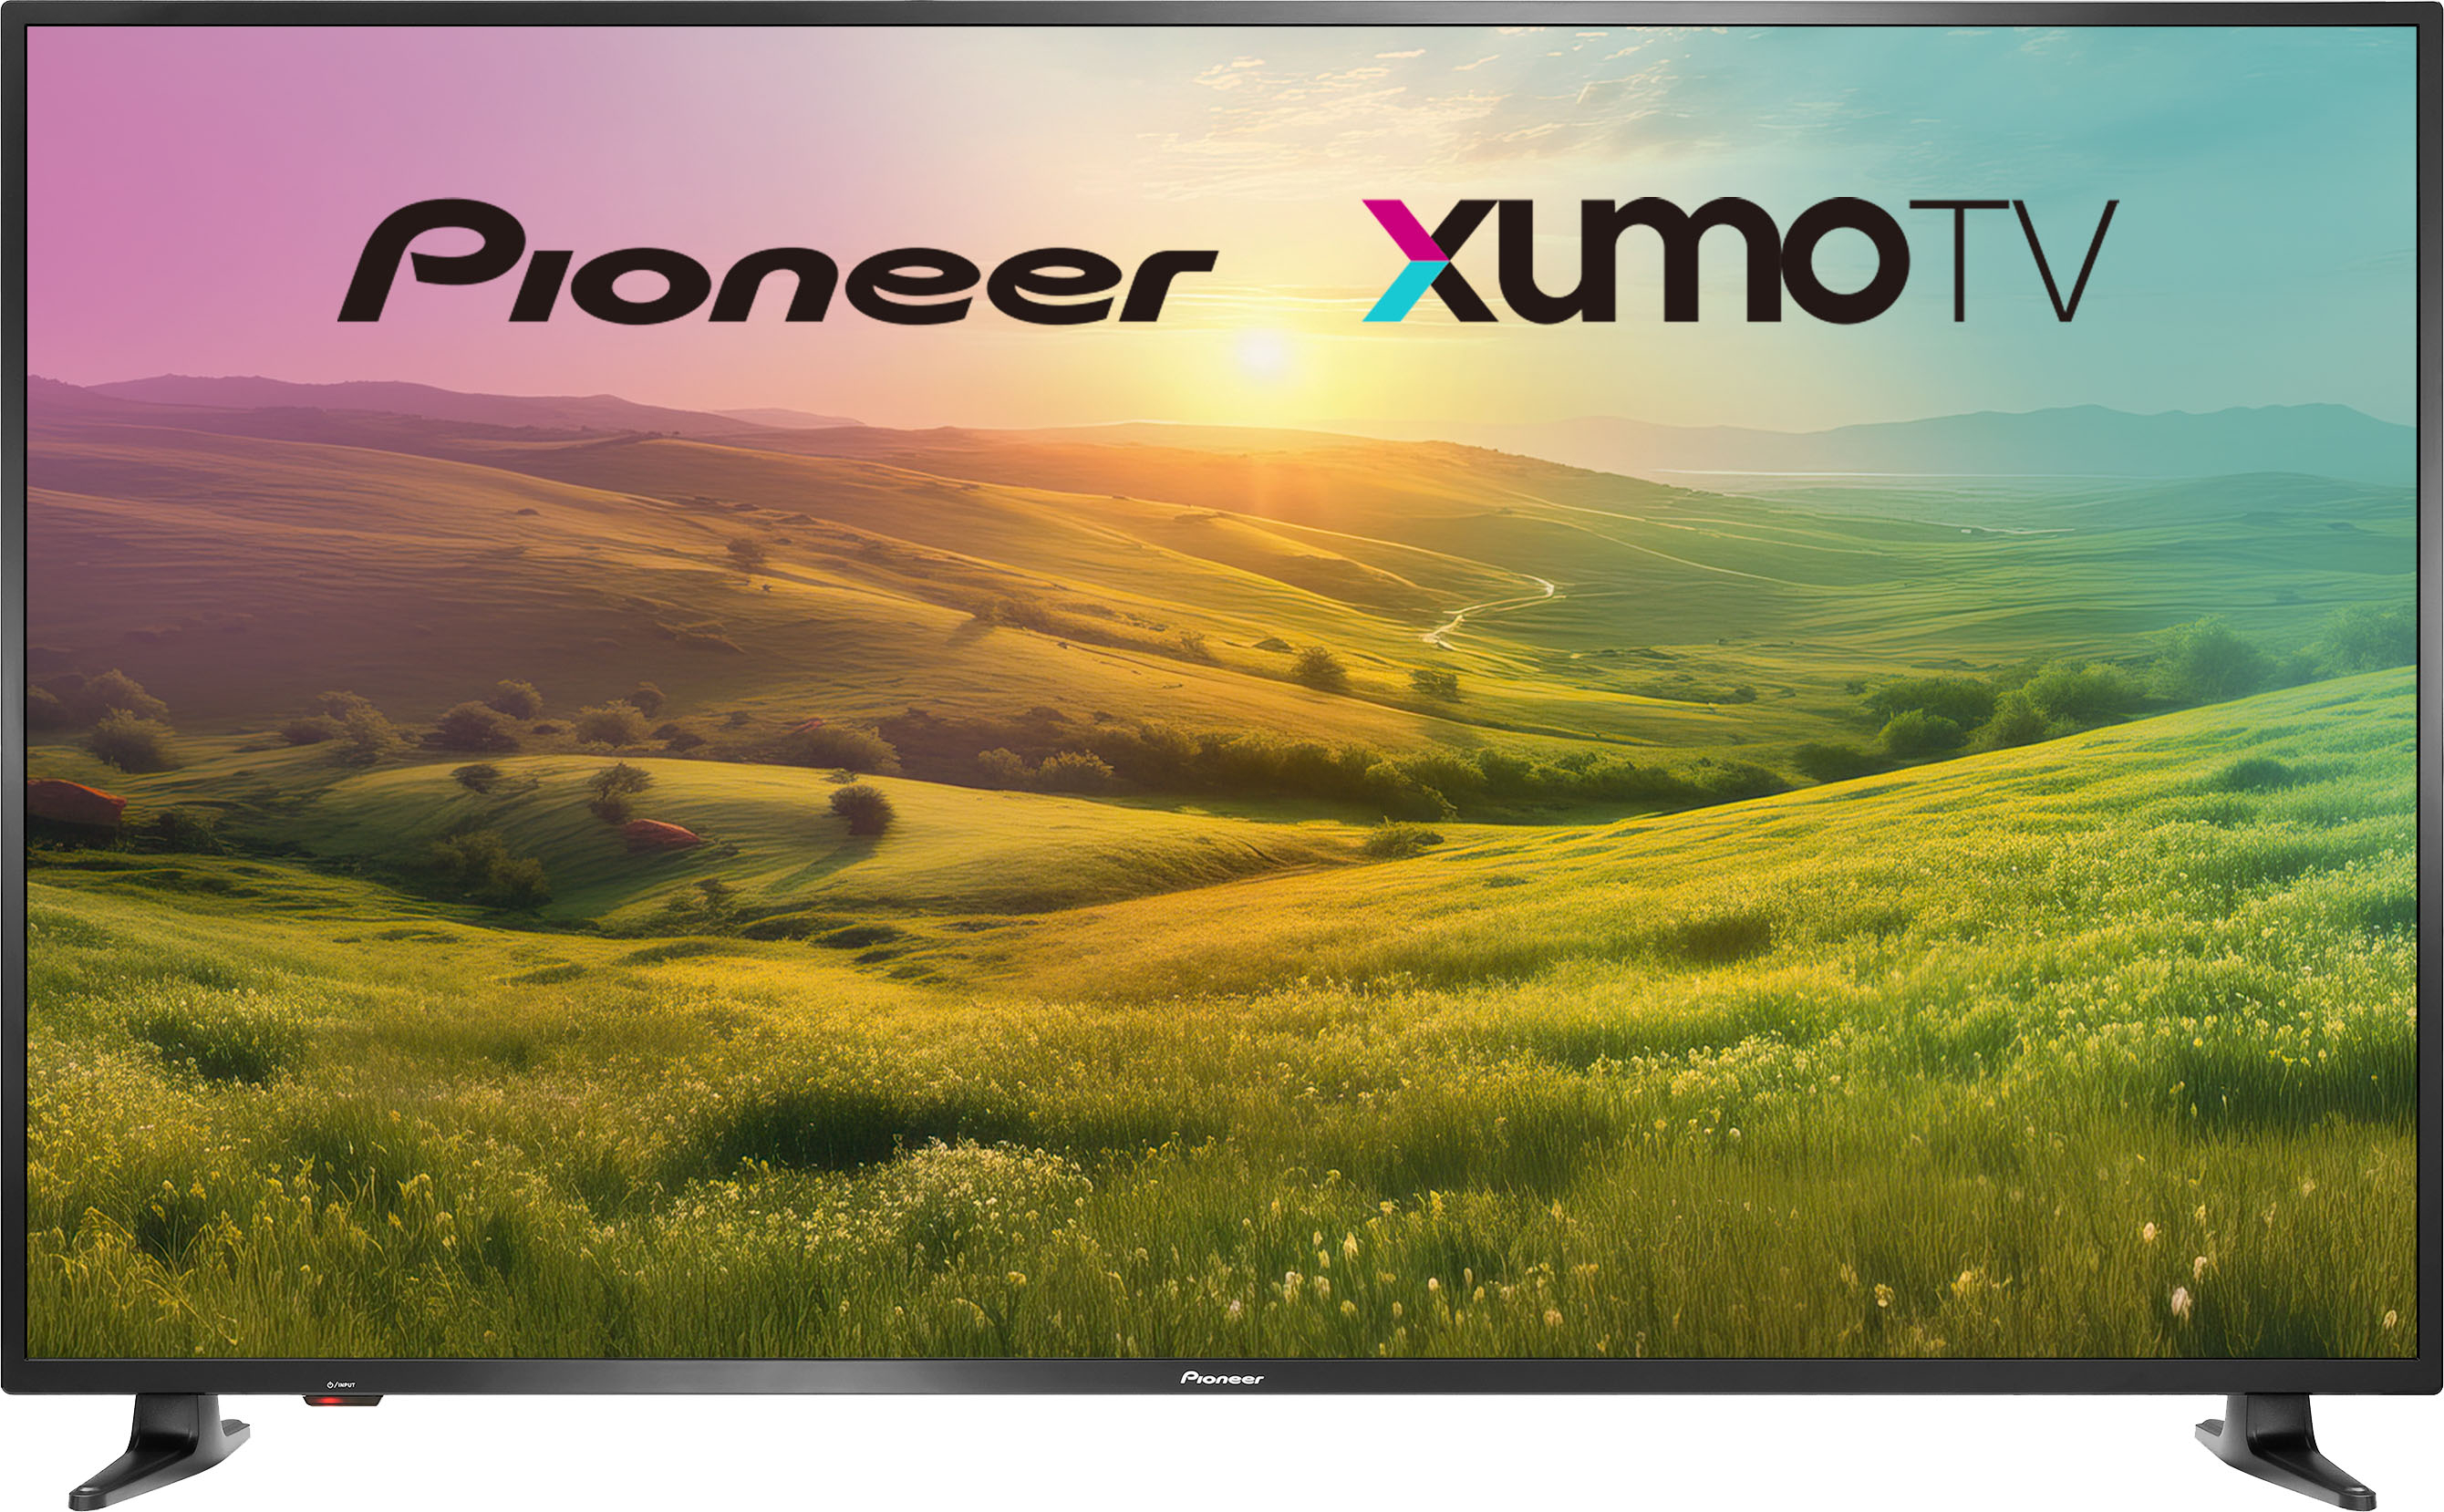 65" Pioneer 4K UHD Smart Xumo LED TV $300 - Best Buy